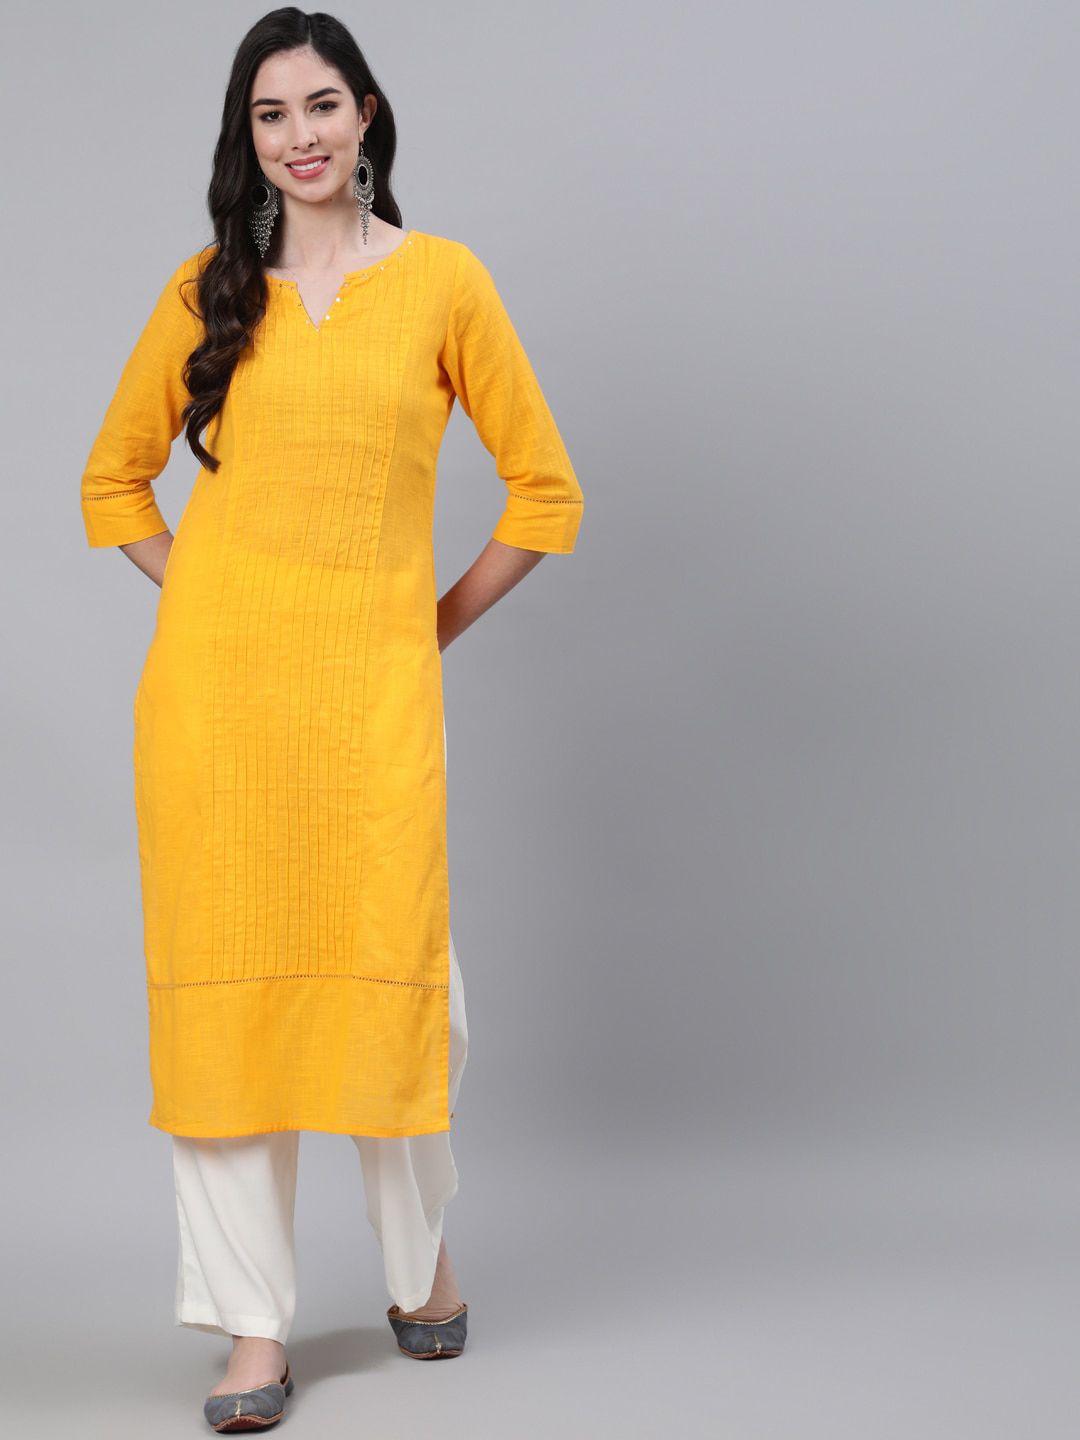 Jaipur Kurti Women Mustard Yellow Pure Cotton Pin Tucks Kurta with Palazzos Price in India